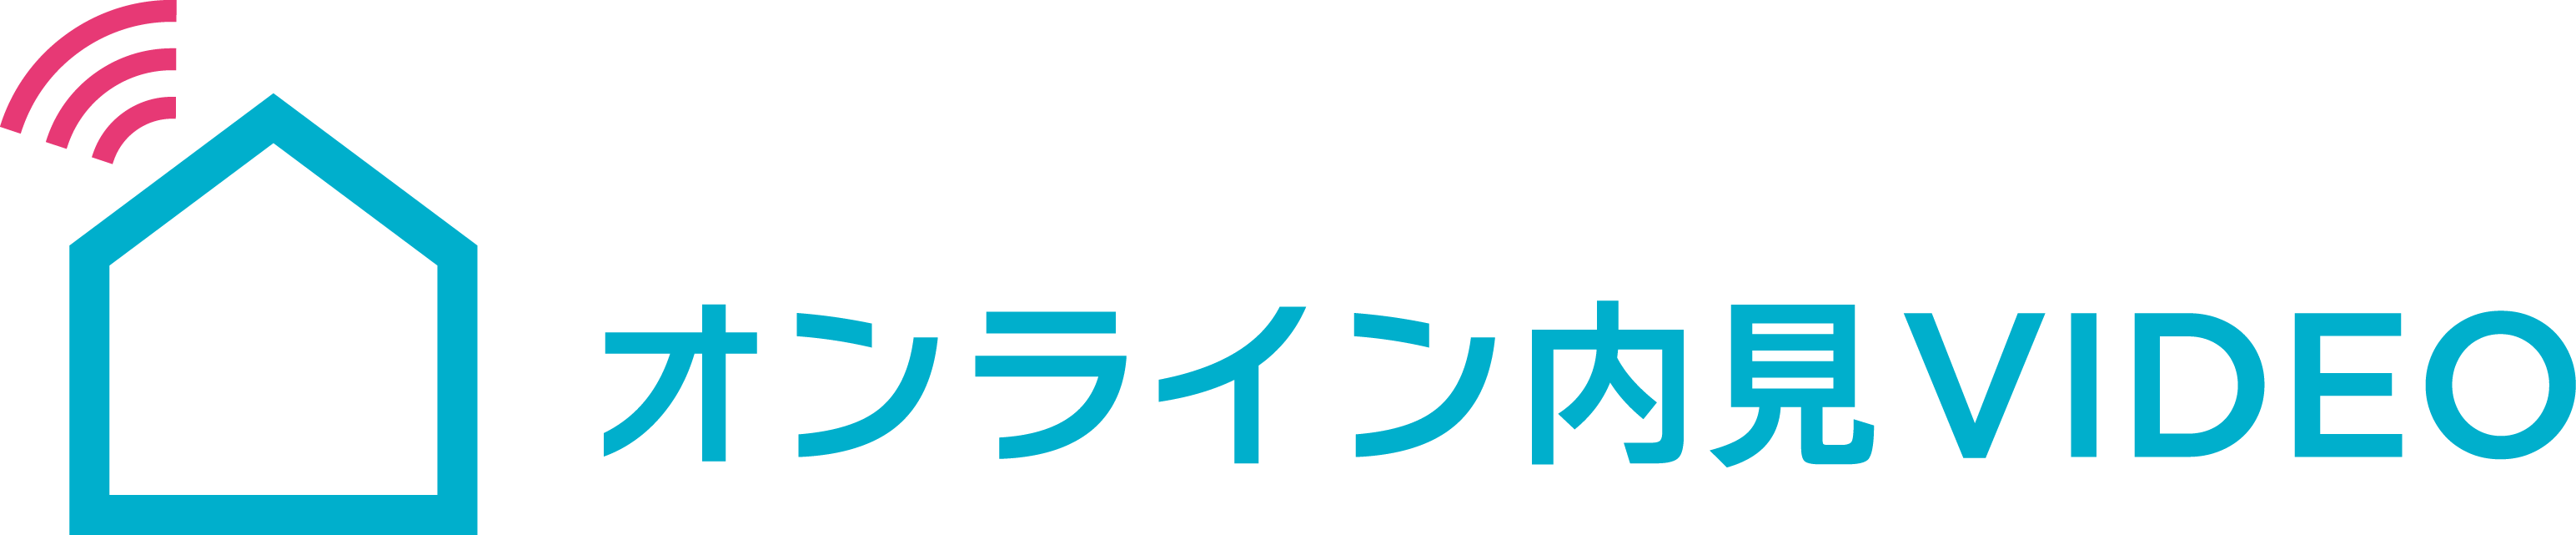 Logo theta3d